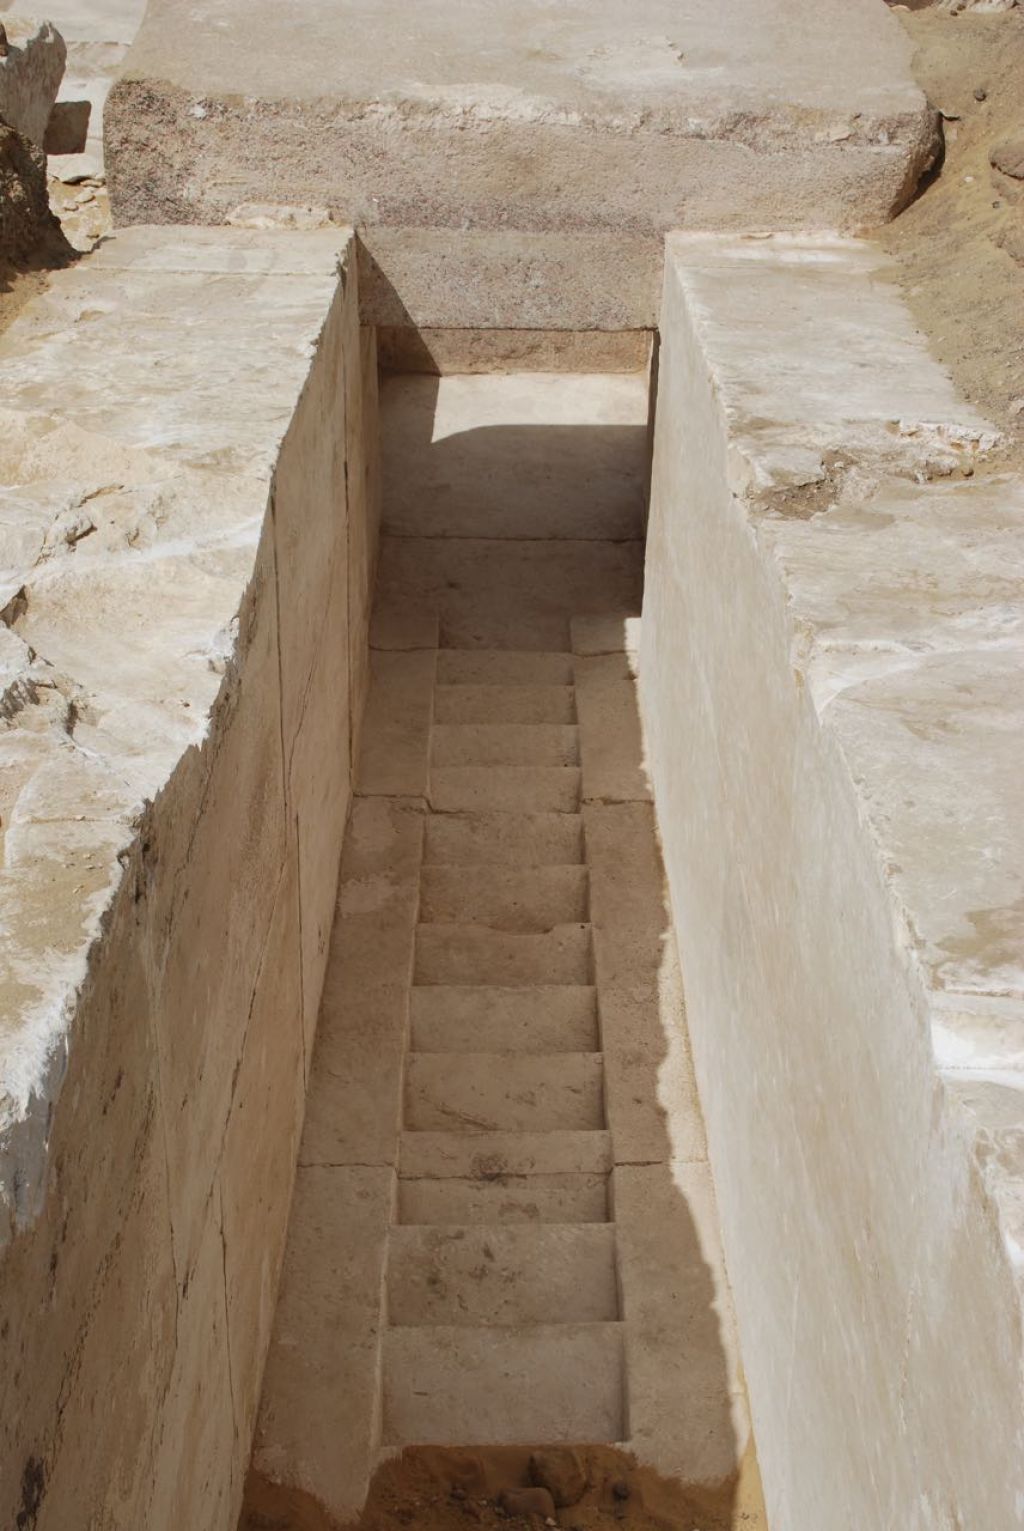 FOTO: V Egiptu so izkopali del piramide izpred 3700 let